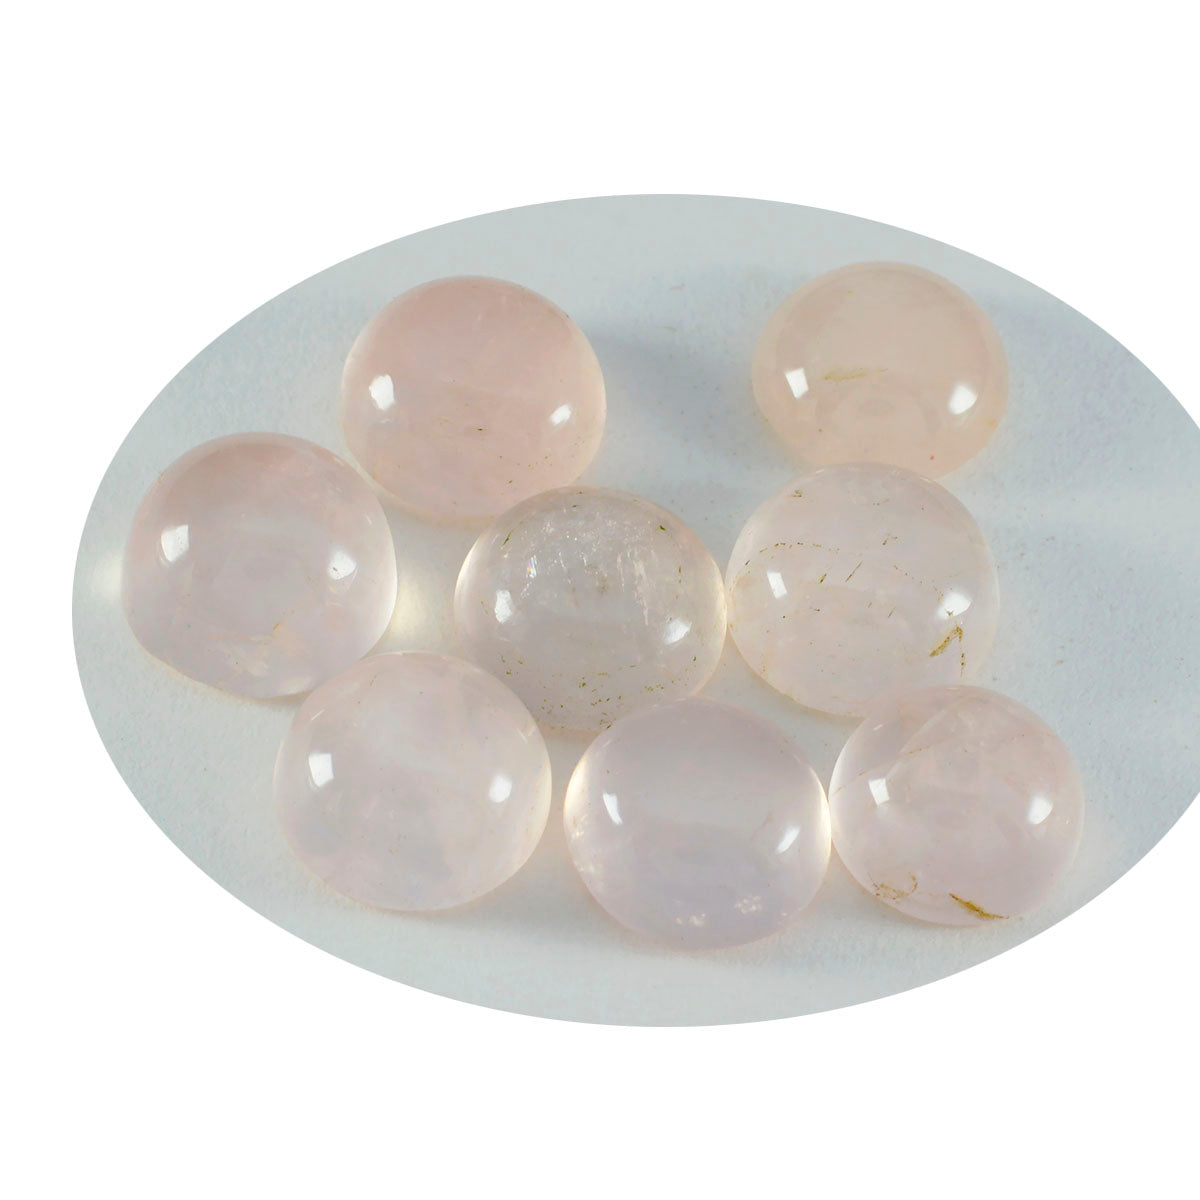 riyogems 1 pz cabochon di quarzo rosa rosa 12x12 mm forma rotonda pietra preziosa di bella qualità